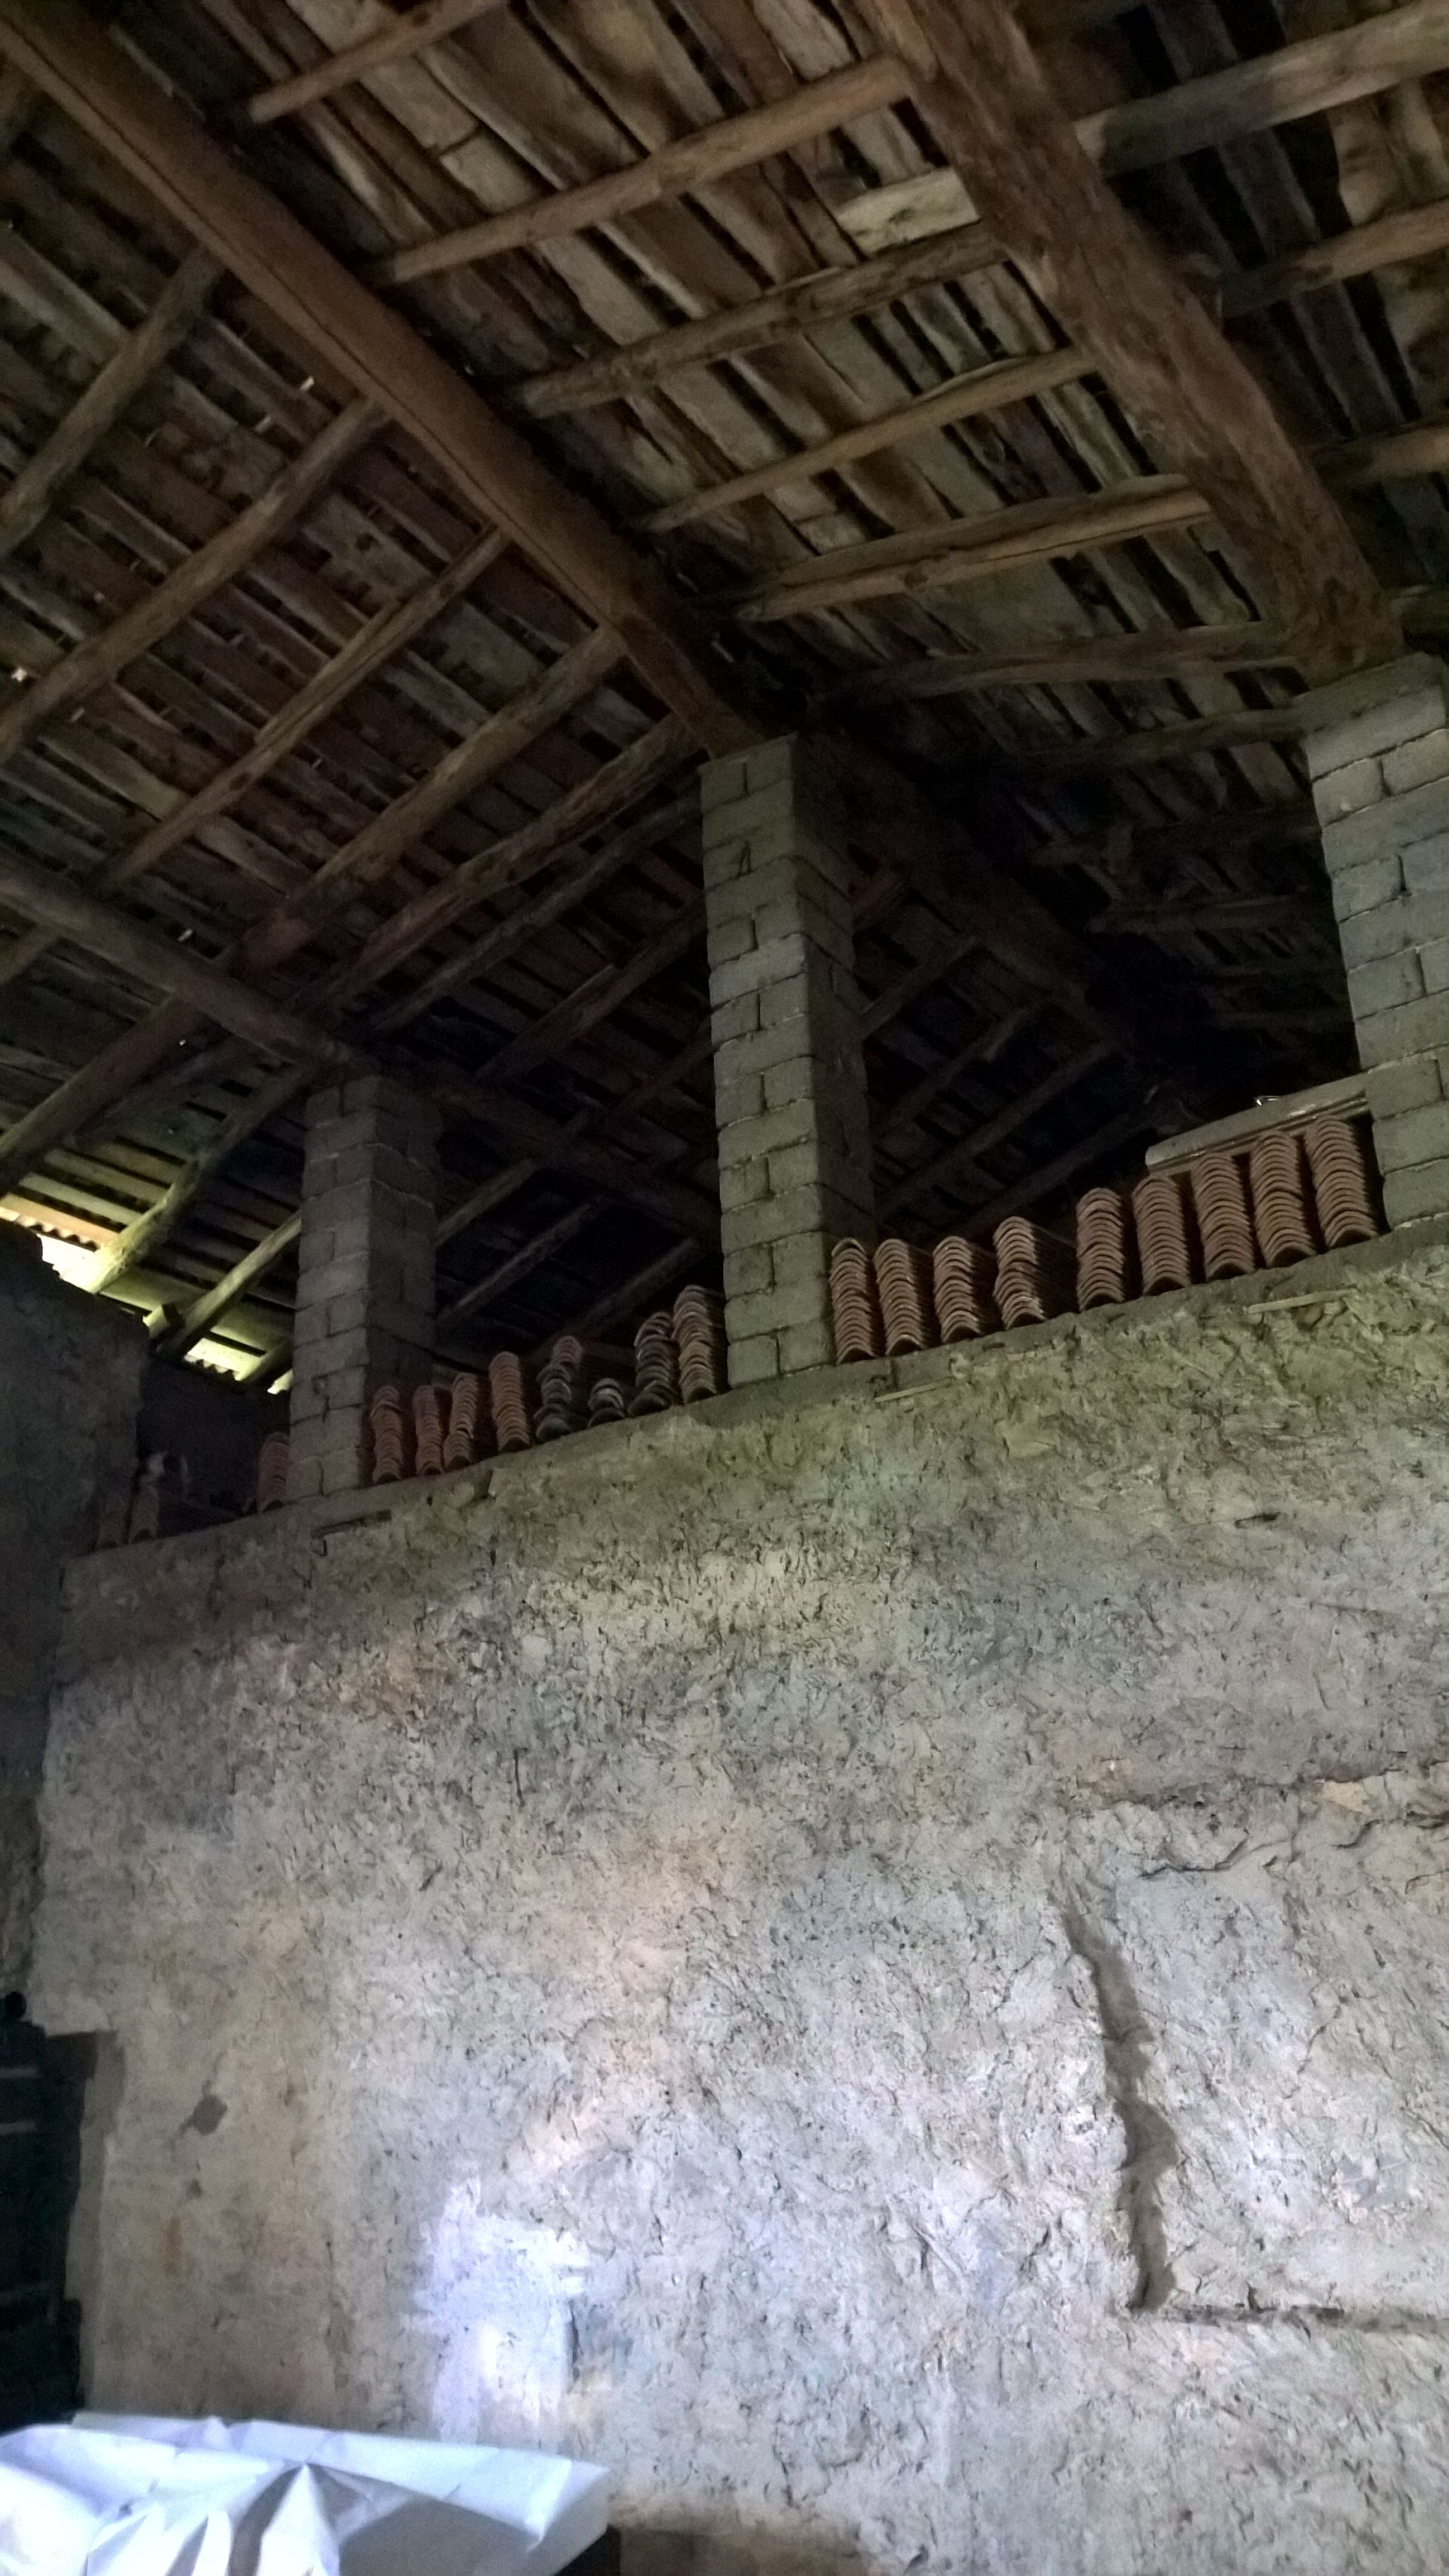 Progetto di ristrutturazione di un casolare adibito a stalla e fienile, casa rurale provincia di Bergamo. Officina Magisafi architettura design - dettaglio tetto attuale